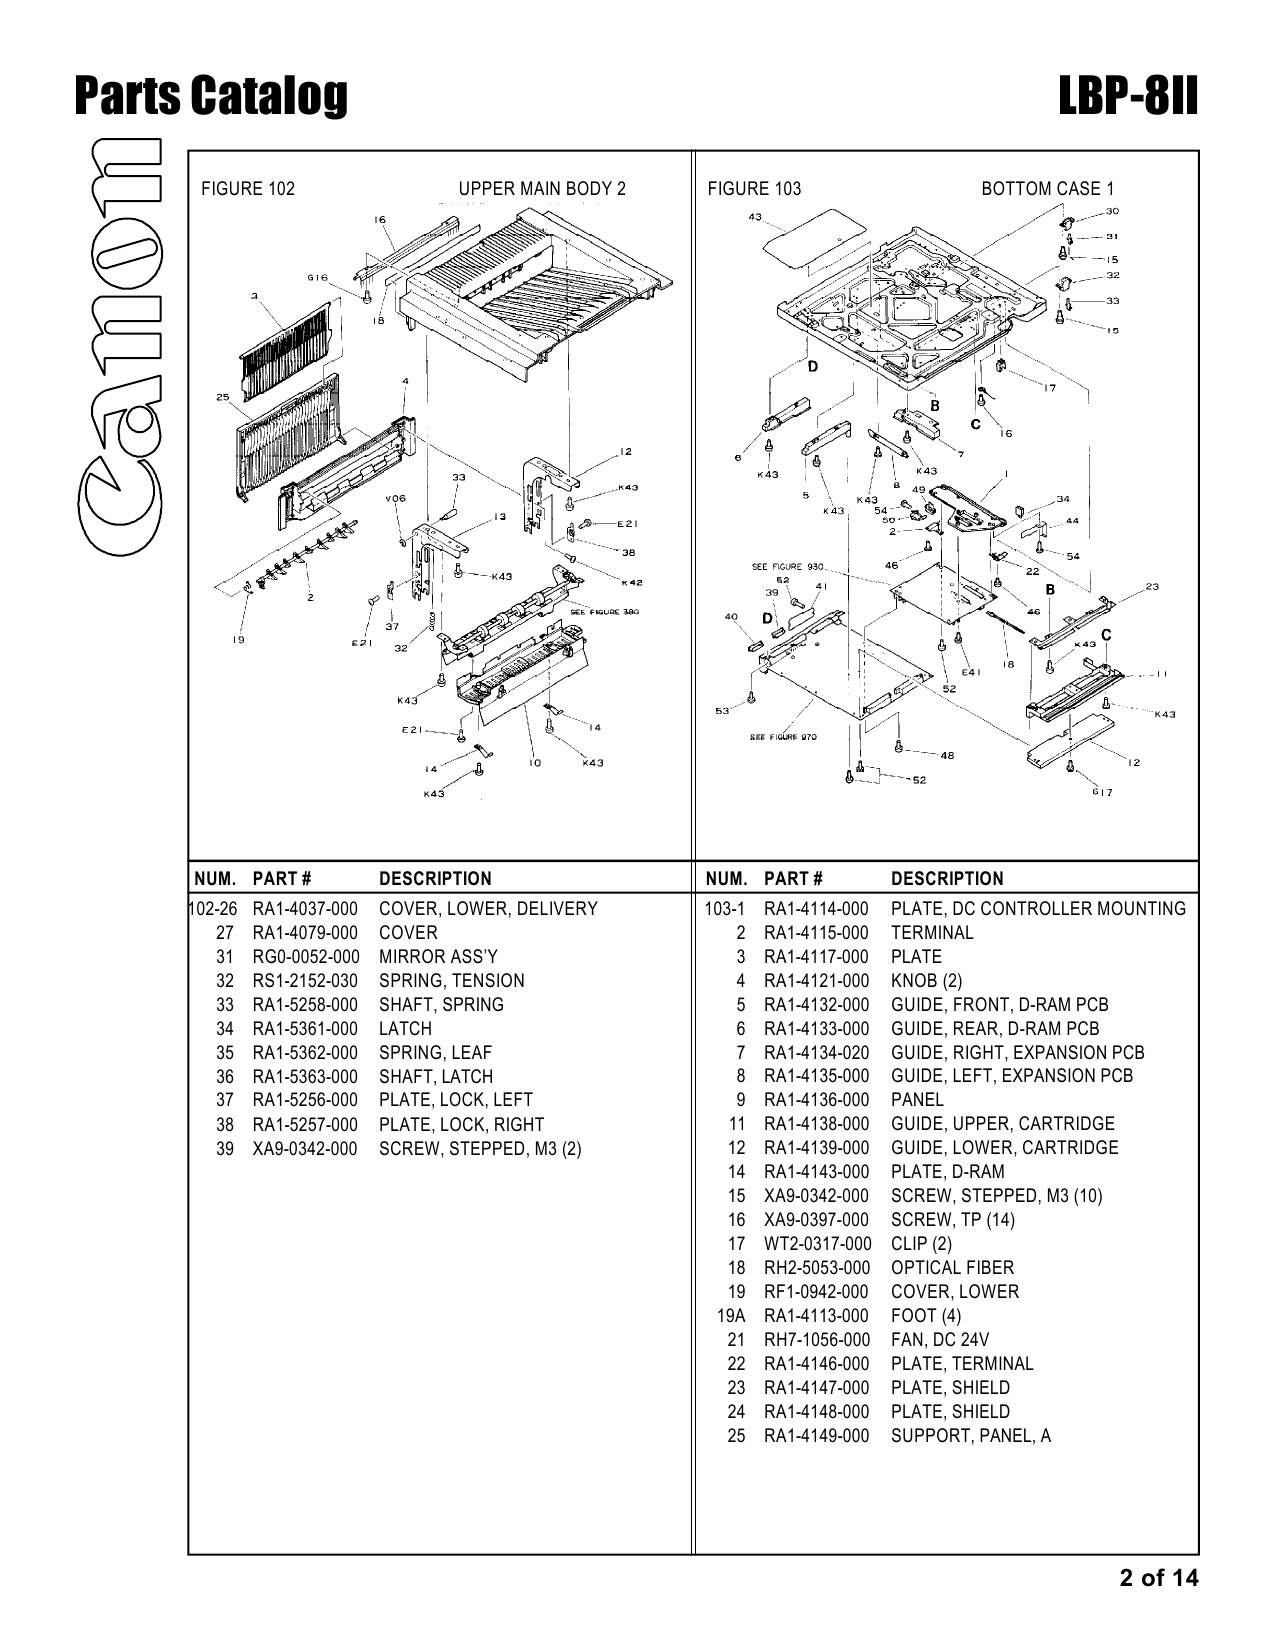 Canon imageCLASS LBP-8II Parts Catalog Manual-2